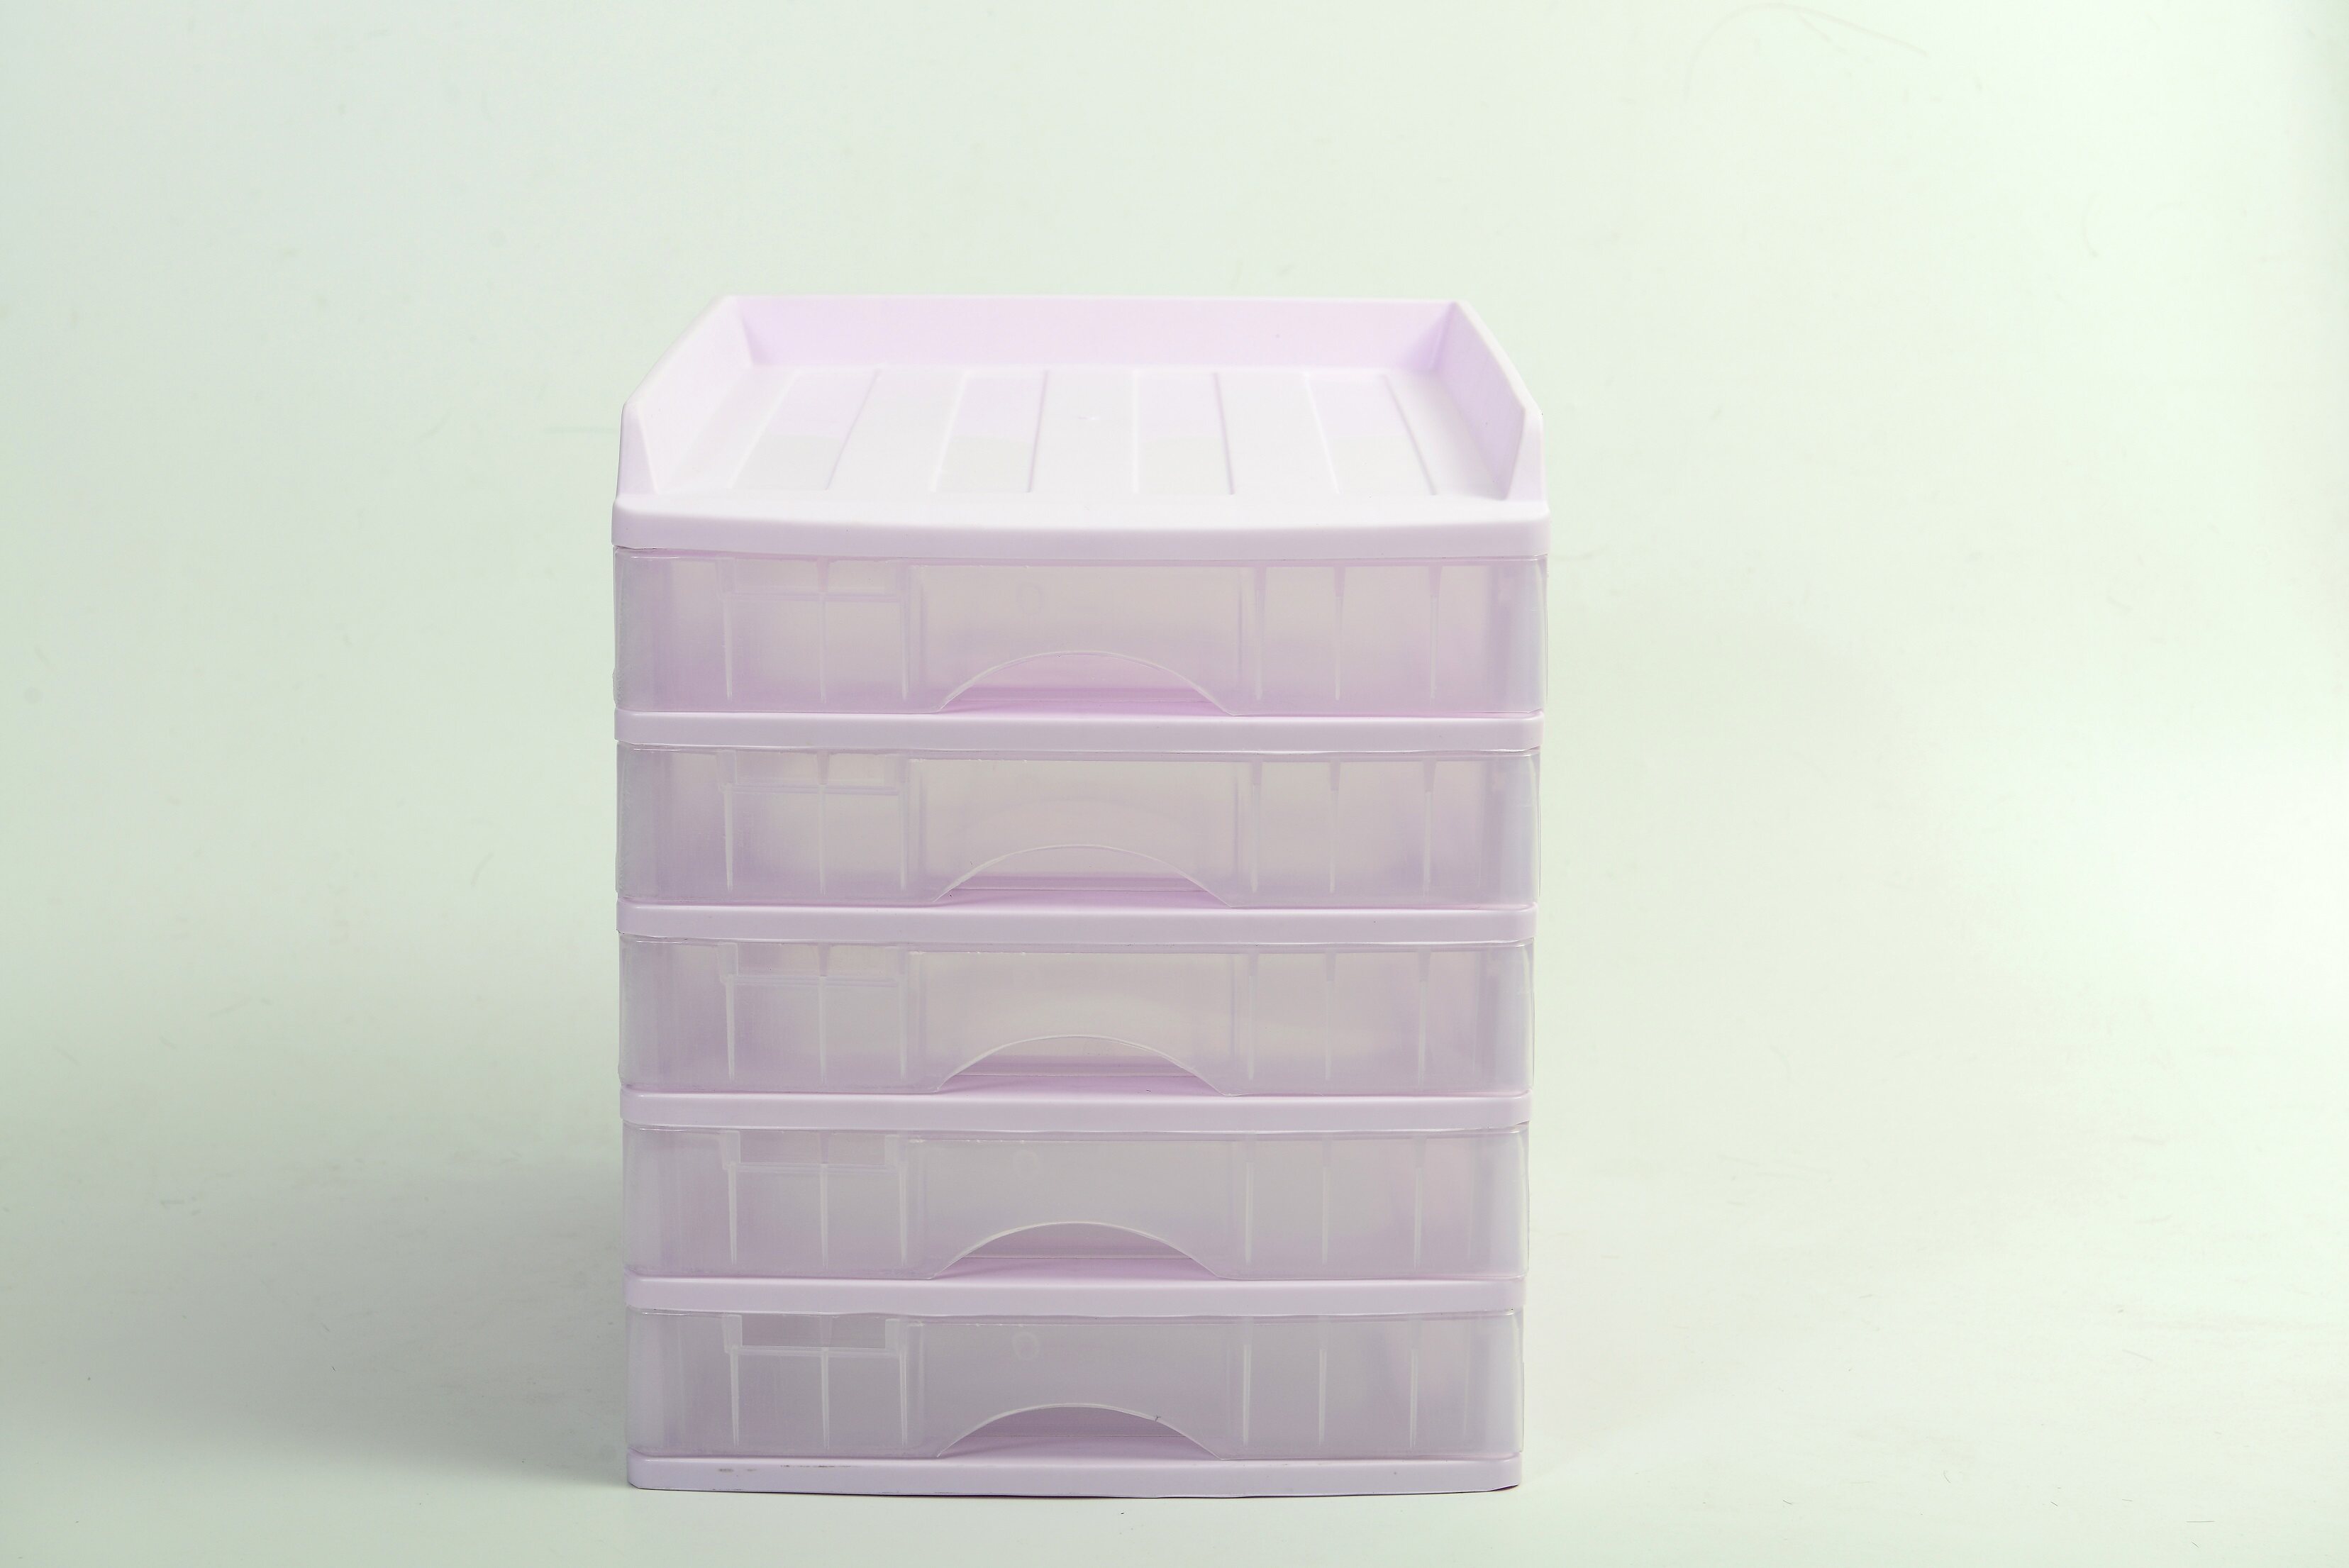 ตู้ลิ้นชัก 5 ชั้น พร้อมถาดบน สีม่วงพาสเทล Organizer with upper tray Purple Pastel color